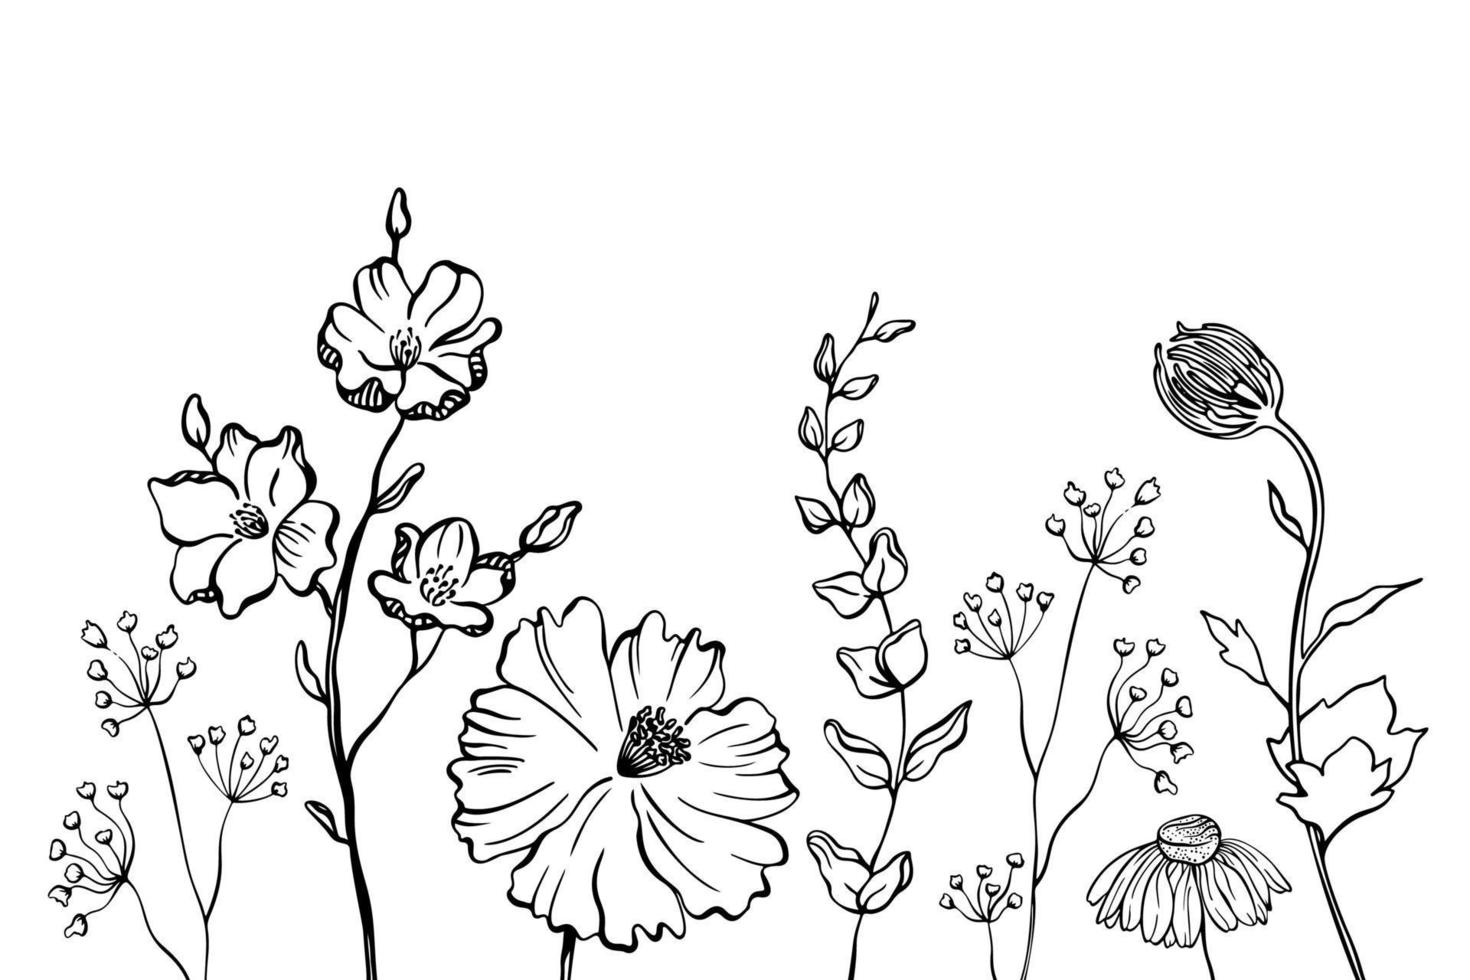 svarta silhuetter av gräs, blommor och örter isolerad på vit bakgrund. handritad skiss blommor. vektor